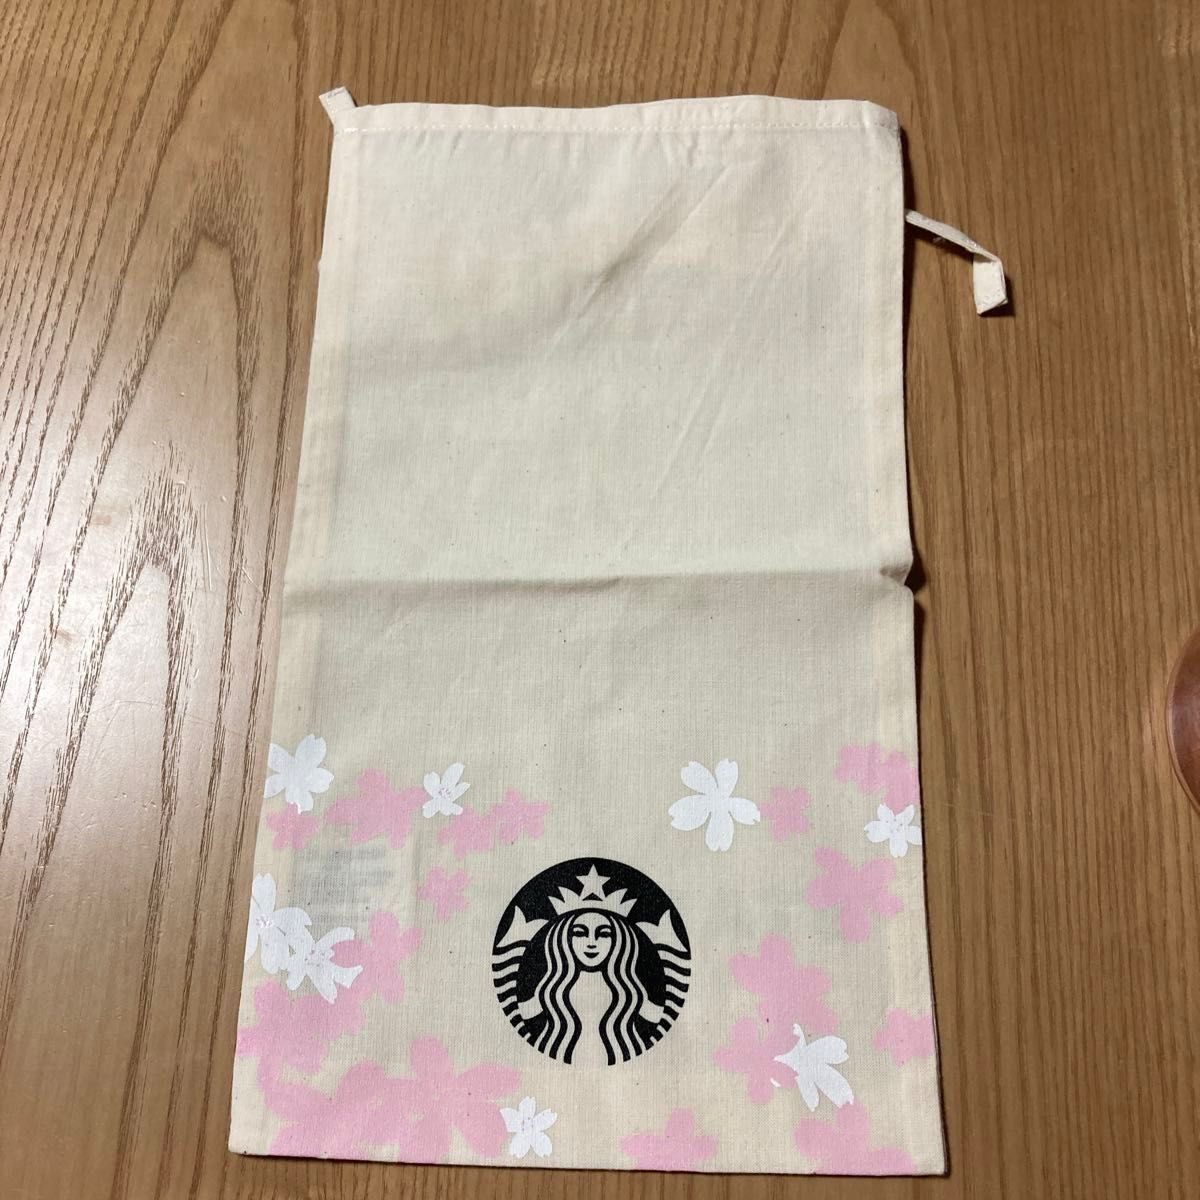 スタバ マグカップ 414ml 桜 ラッピング袋 セット サクラ スターバックス Starbucks プレゼント